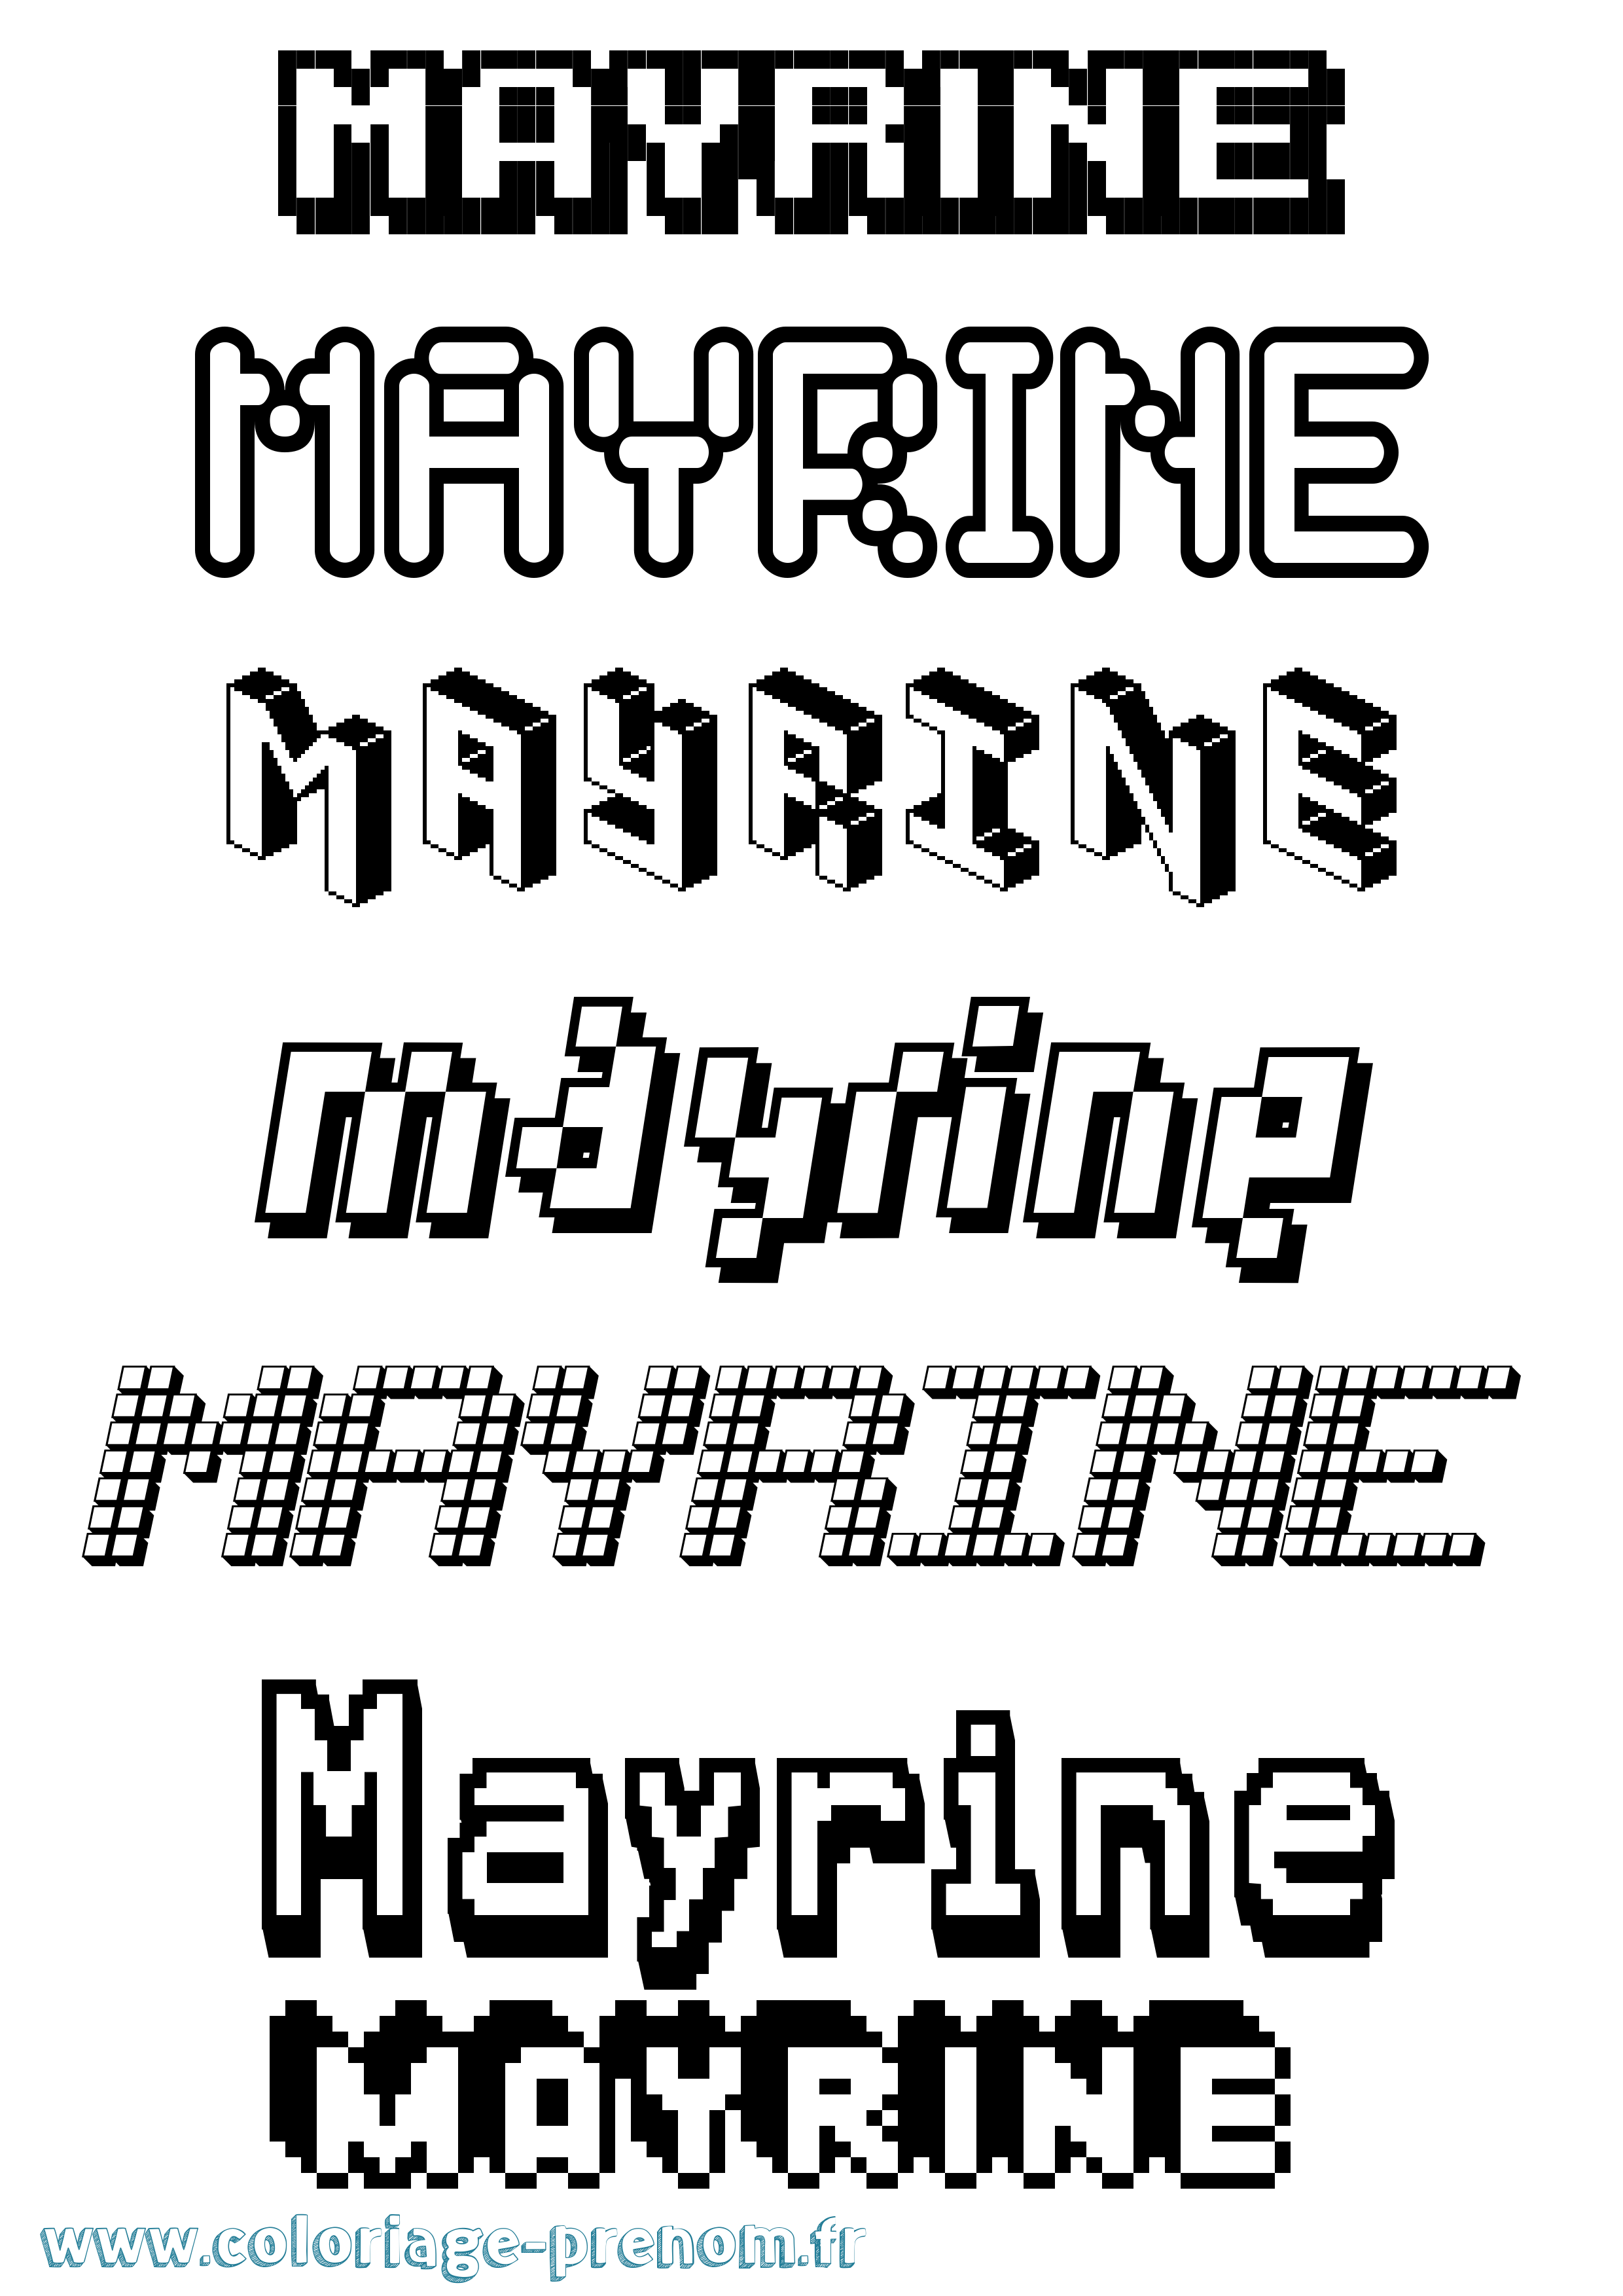 Coloriage prénom Mayrine Pixel